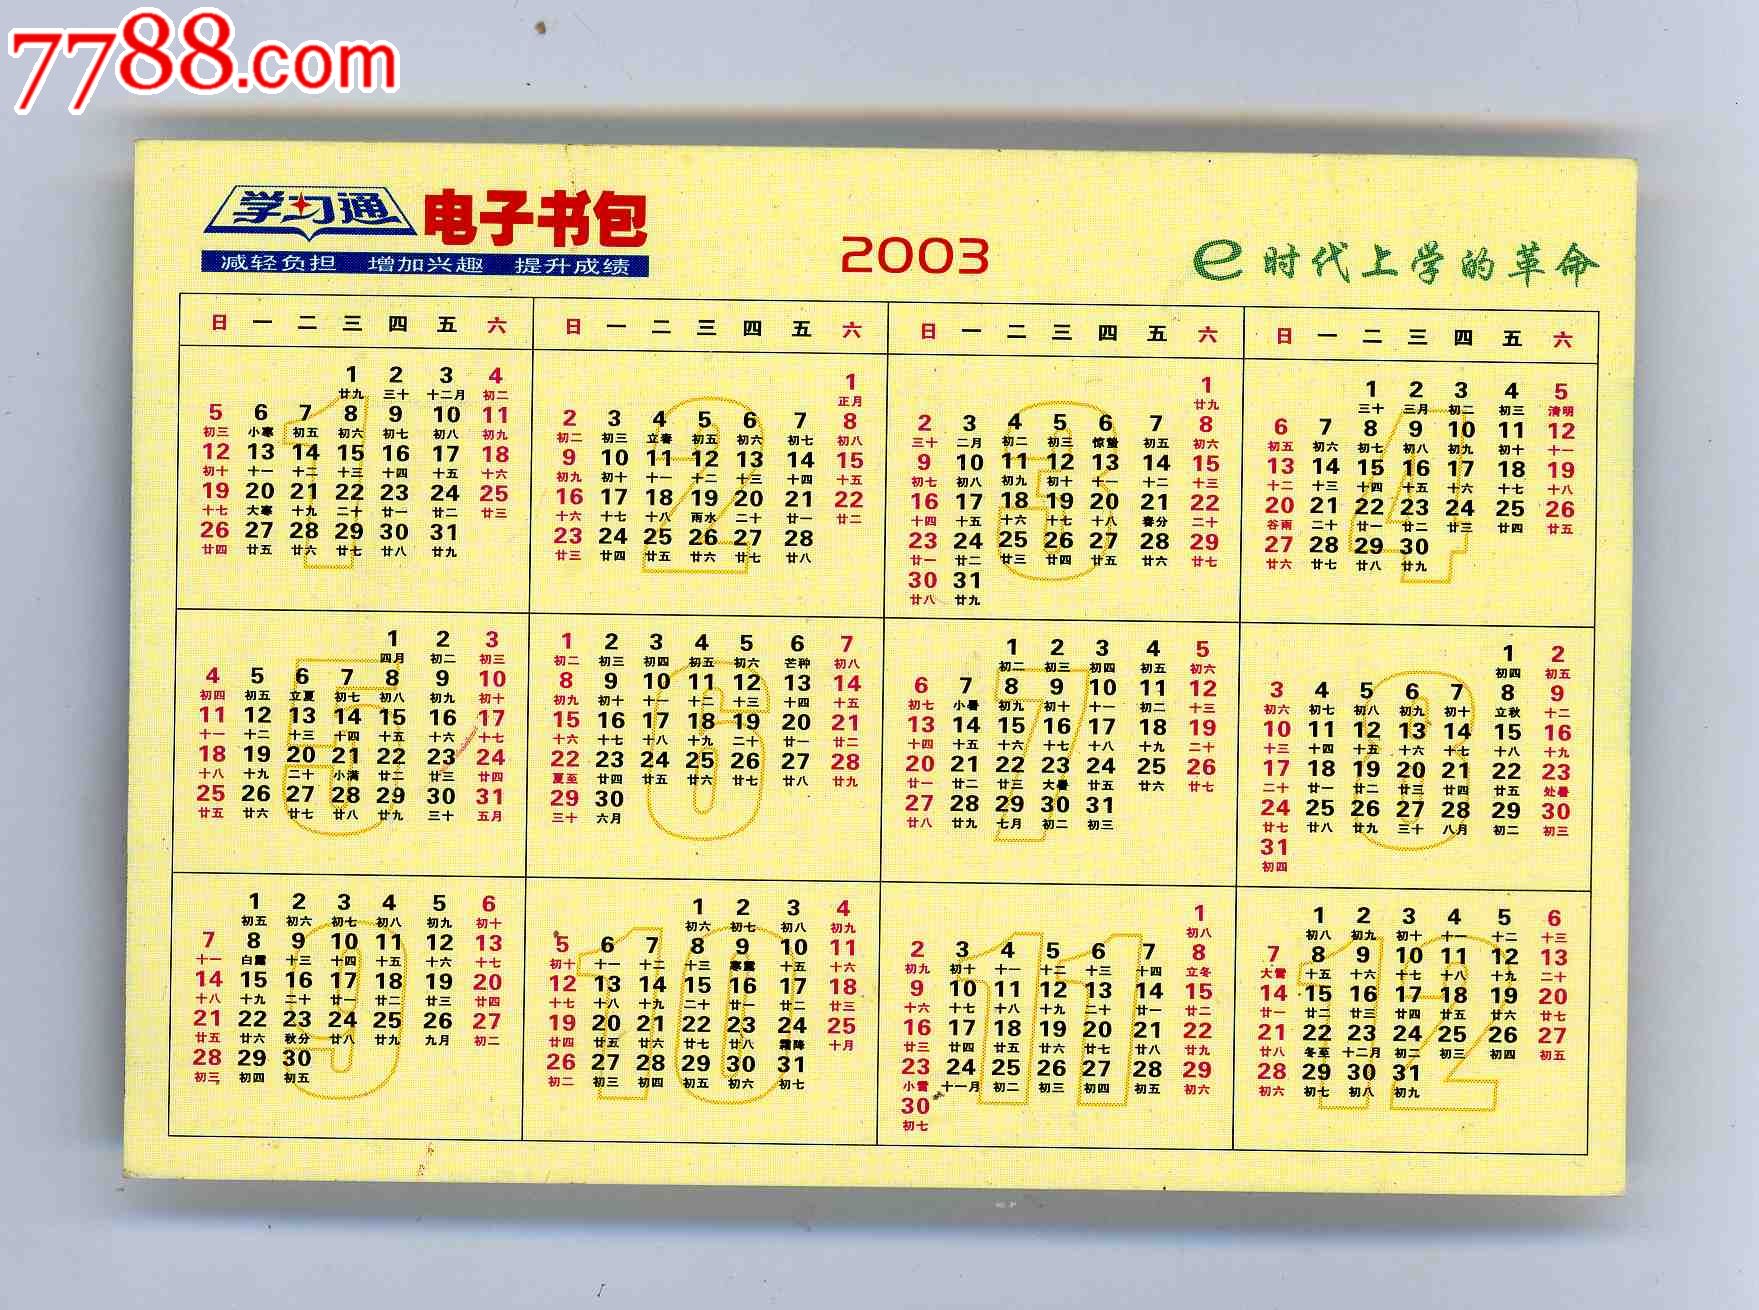 2003年历片-价格:1.0000元-se-年历卡